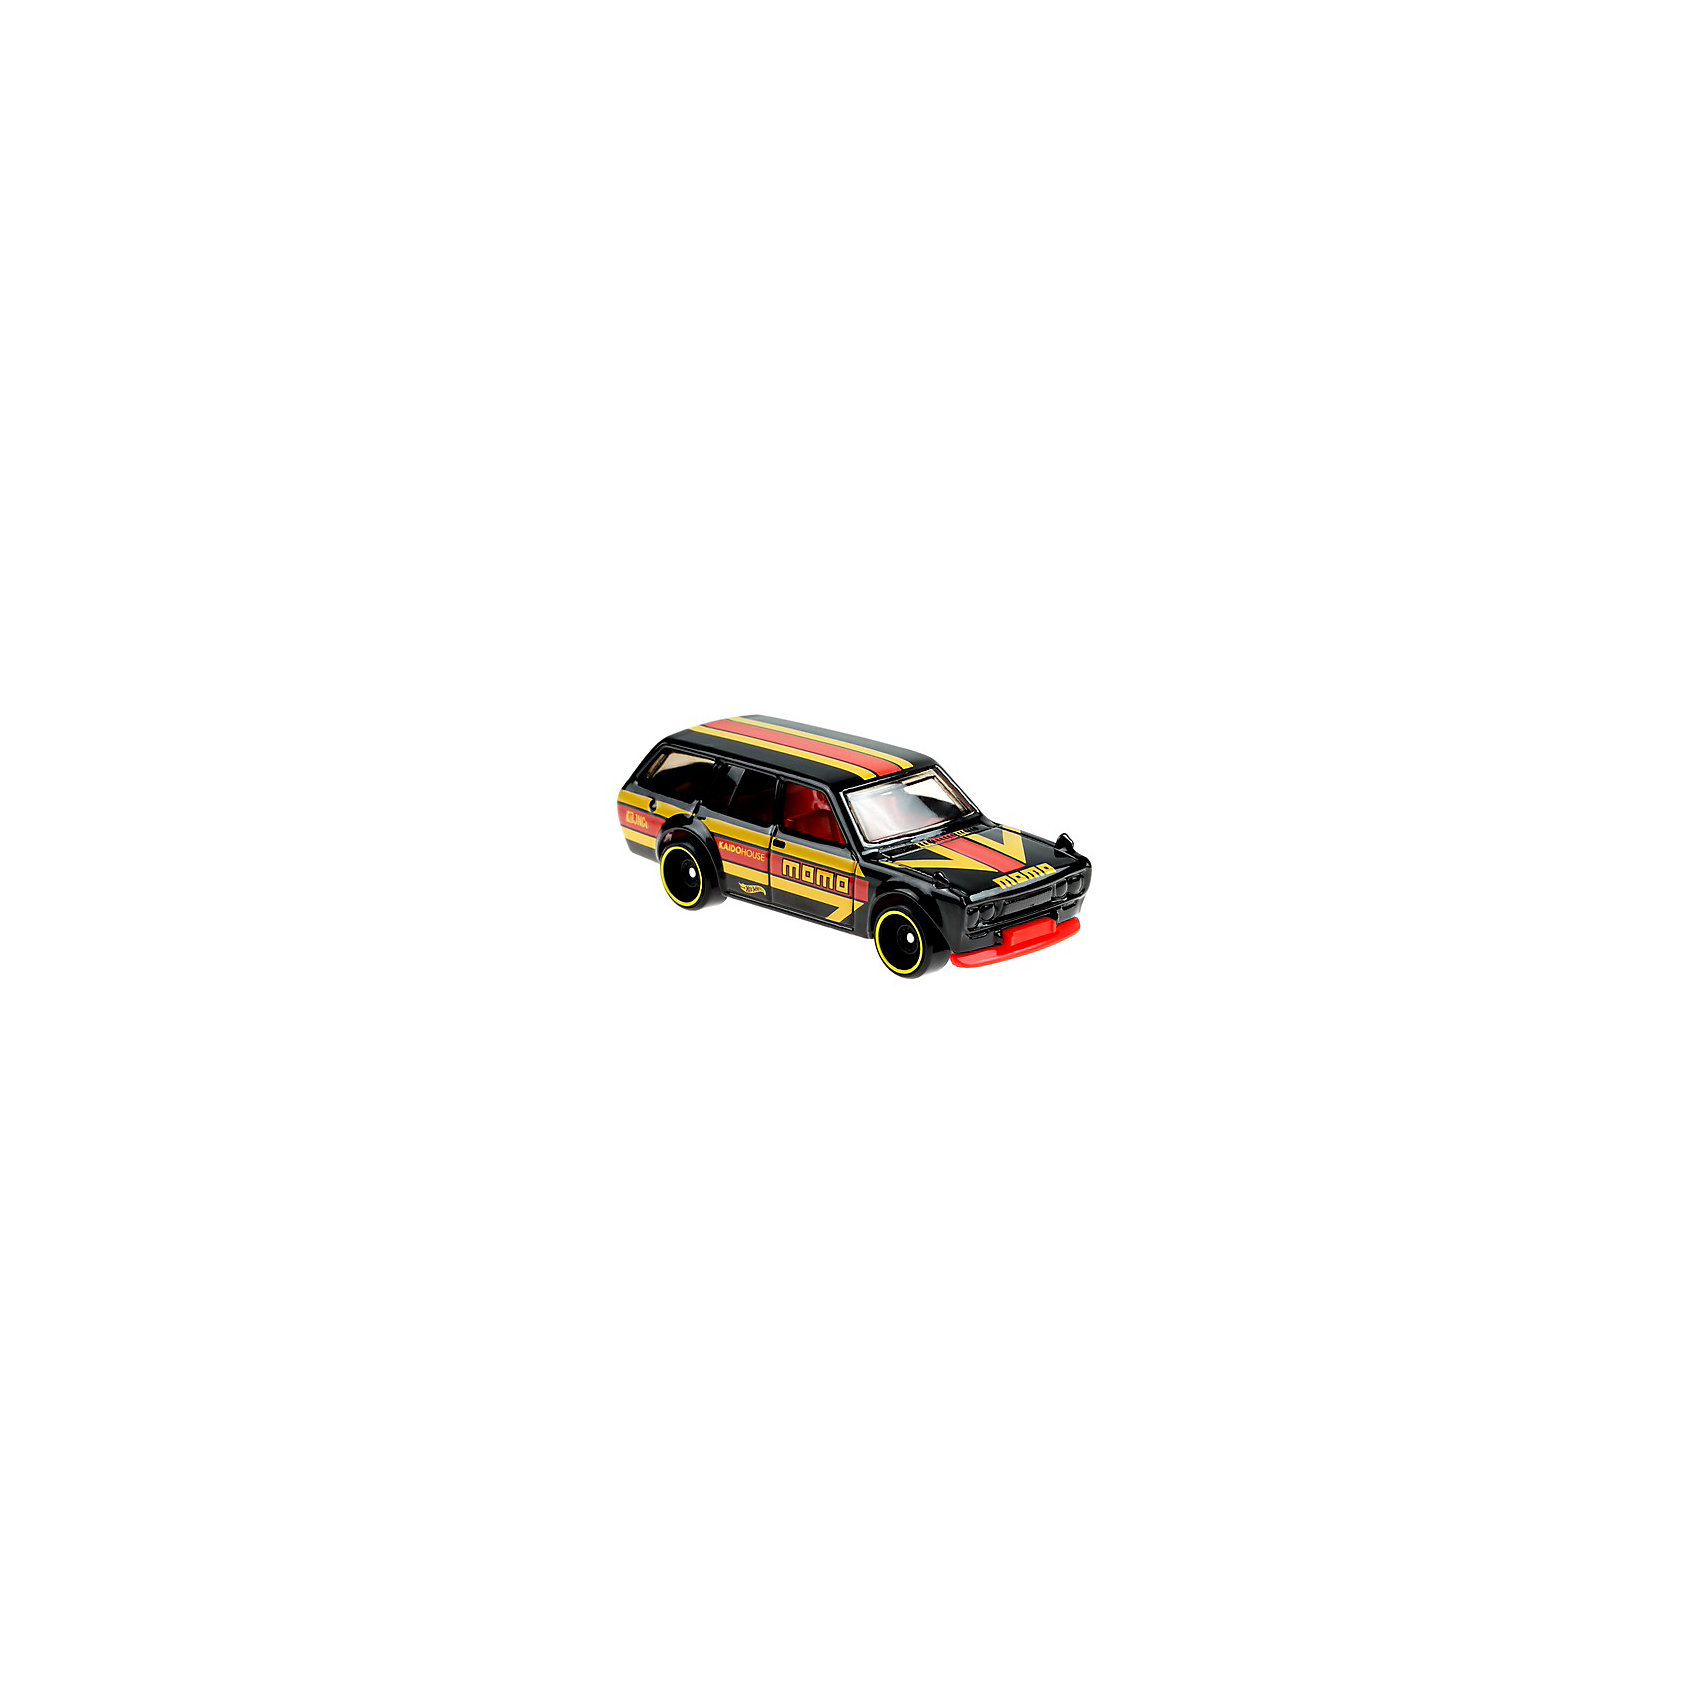 Базовая машинка Hot Wheels Datsun Bluebird Wagon (510) Mattel 16954698